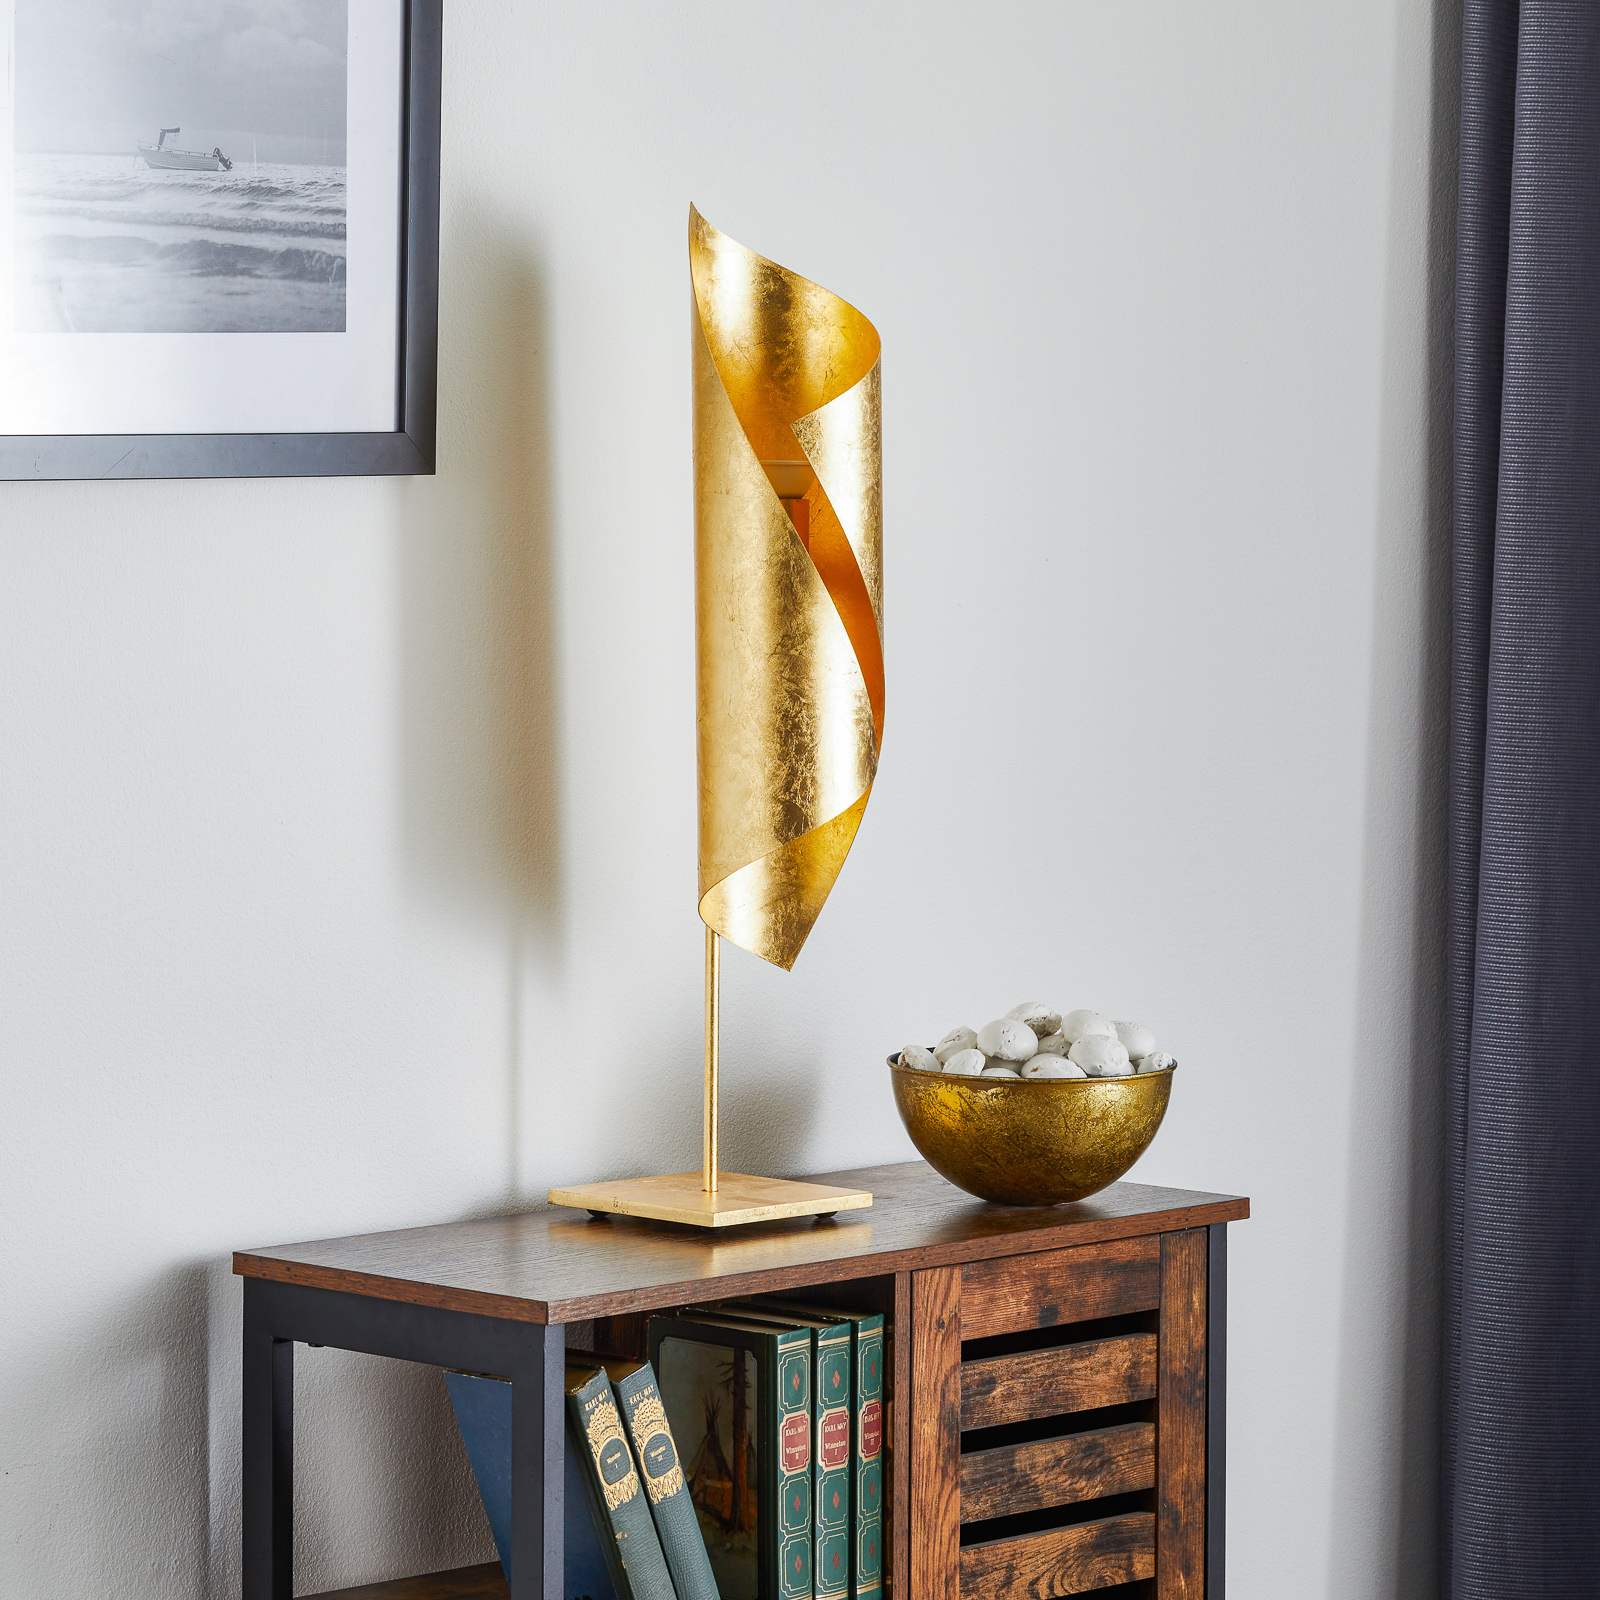 Knikerboker Hué arany levéllel díszített asztali lámpa, 70 cm magas